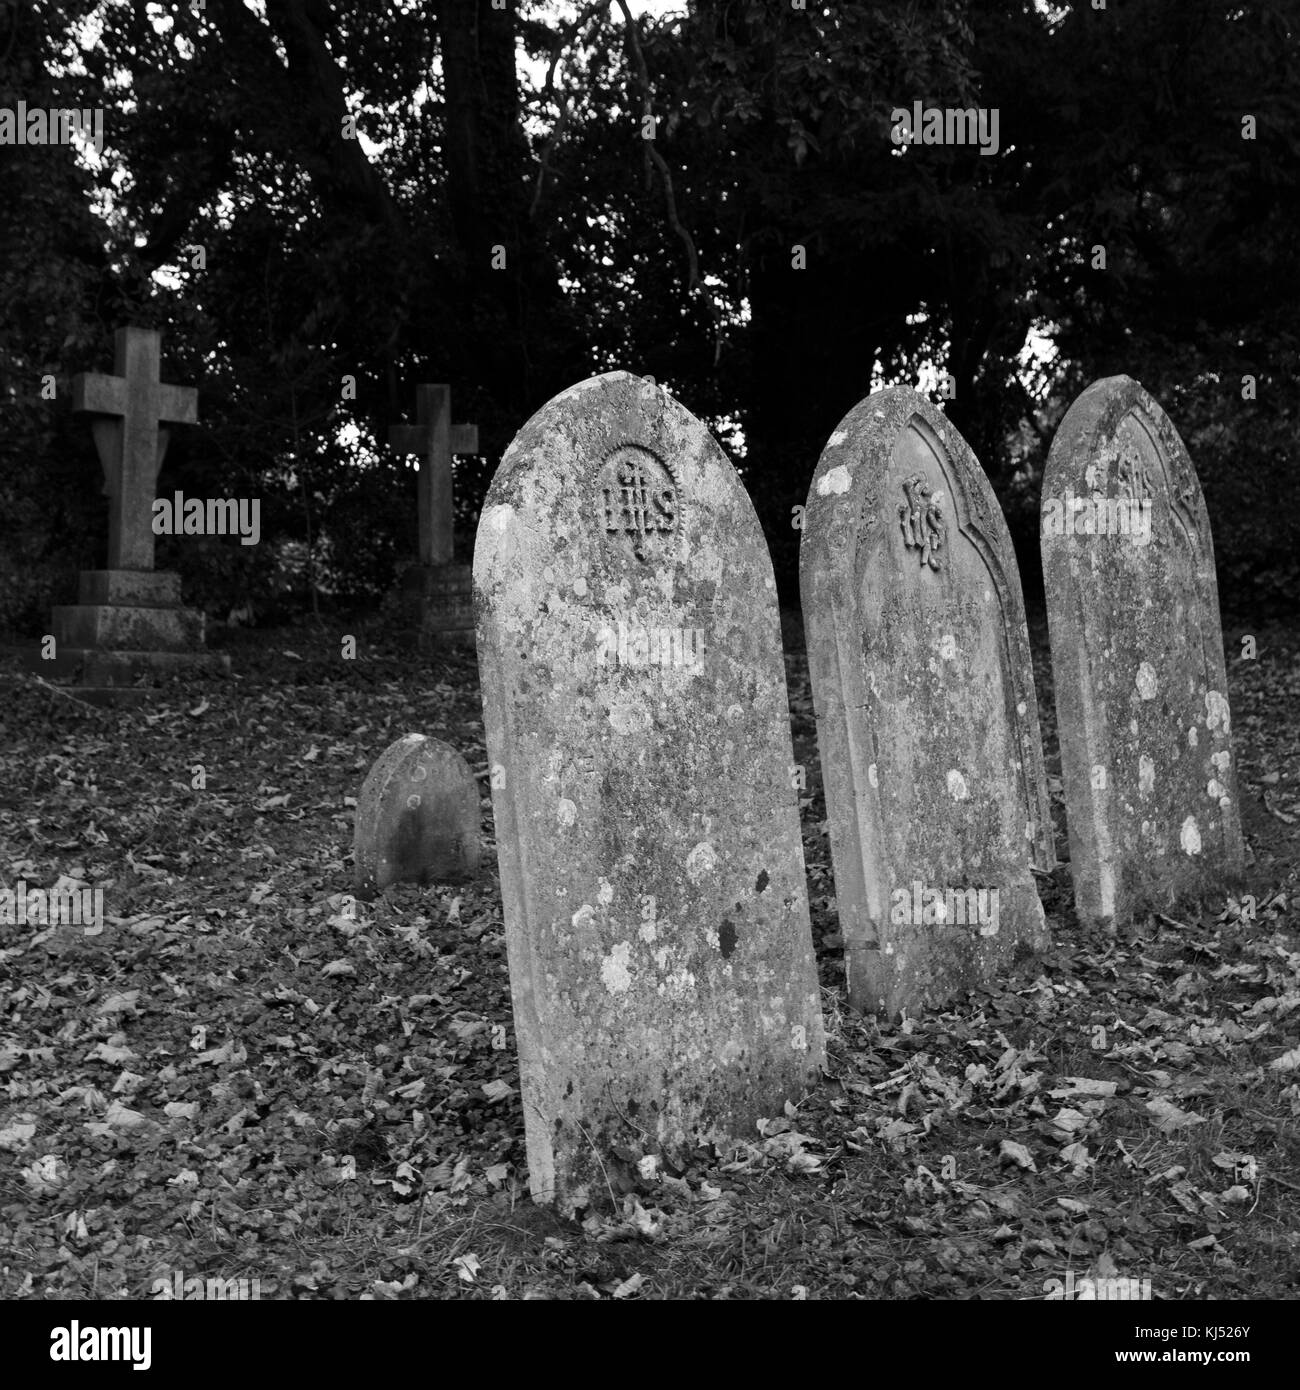 Des pierres tombales - Étude en noir et blanc Banque D'Images